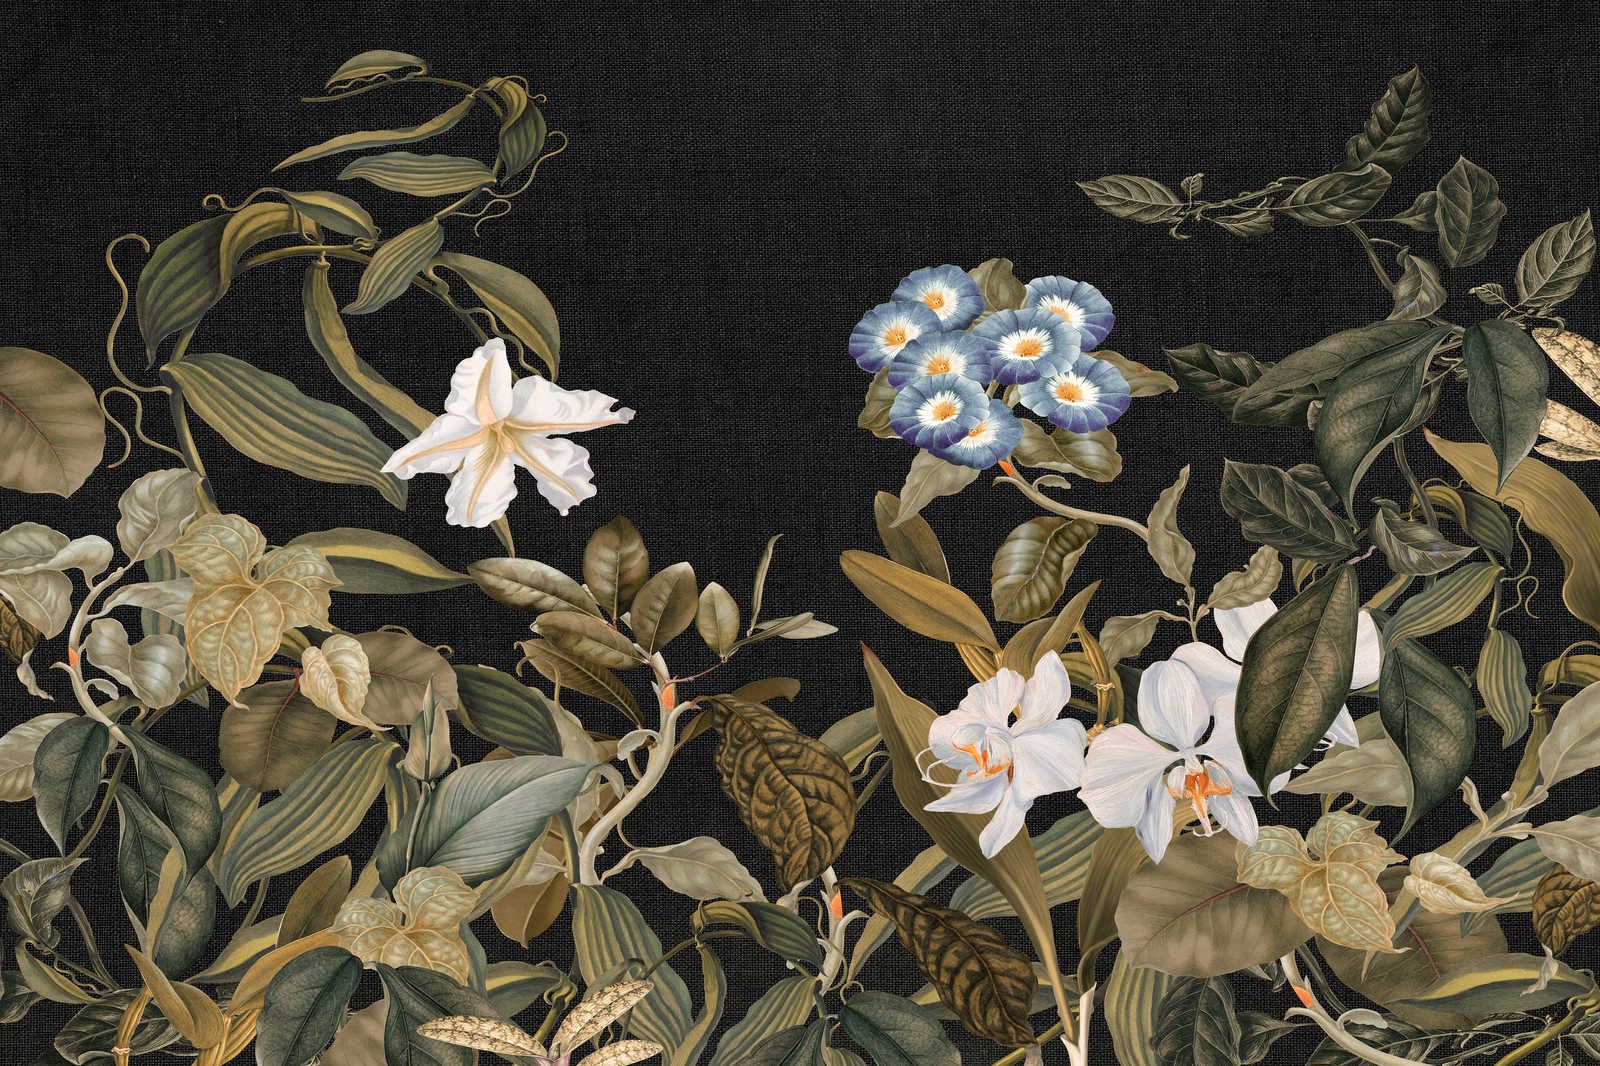             Botanical Leinwandbild mit Orchideen & Blätter-Motiv – 0,90 m x 0,60 m
        